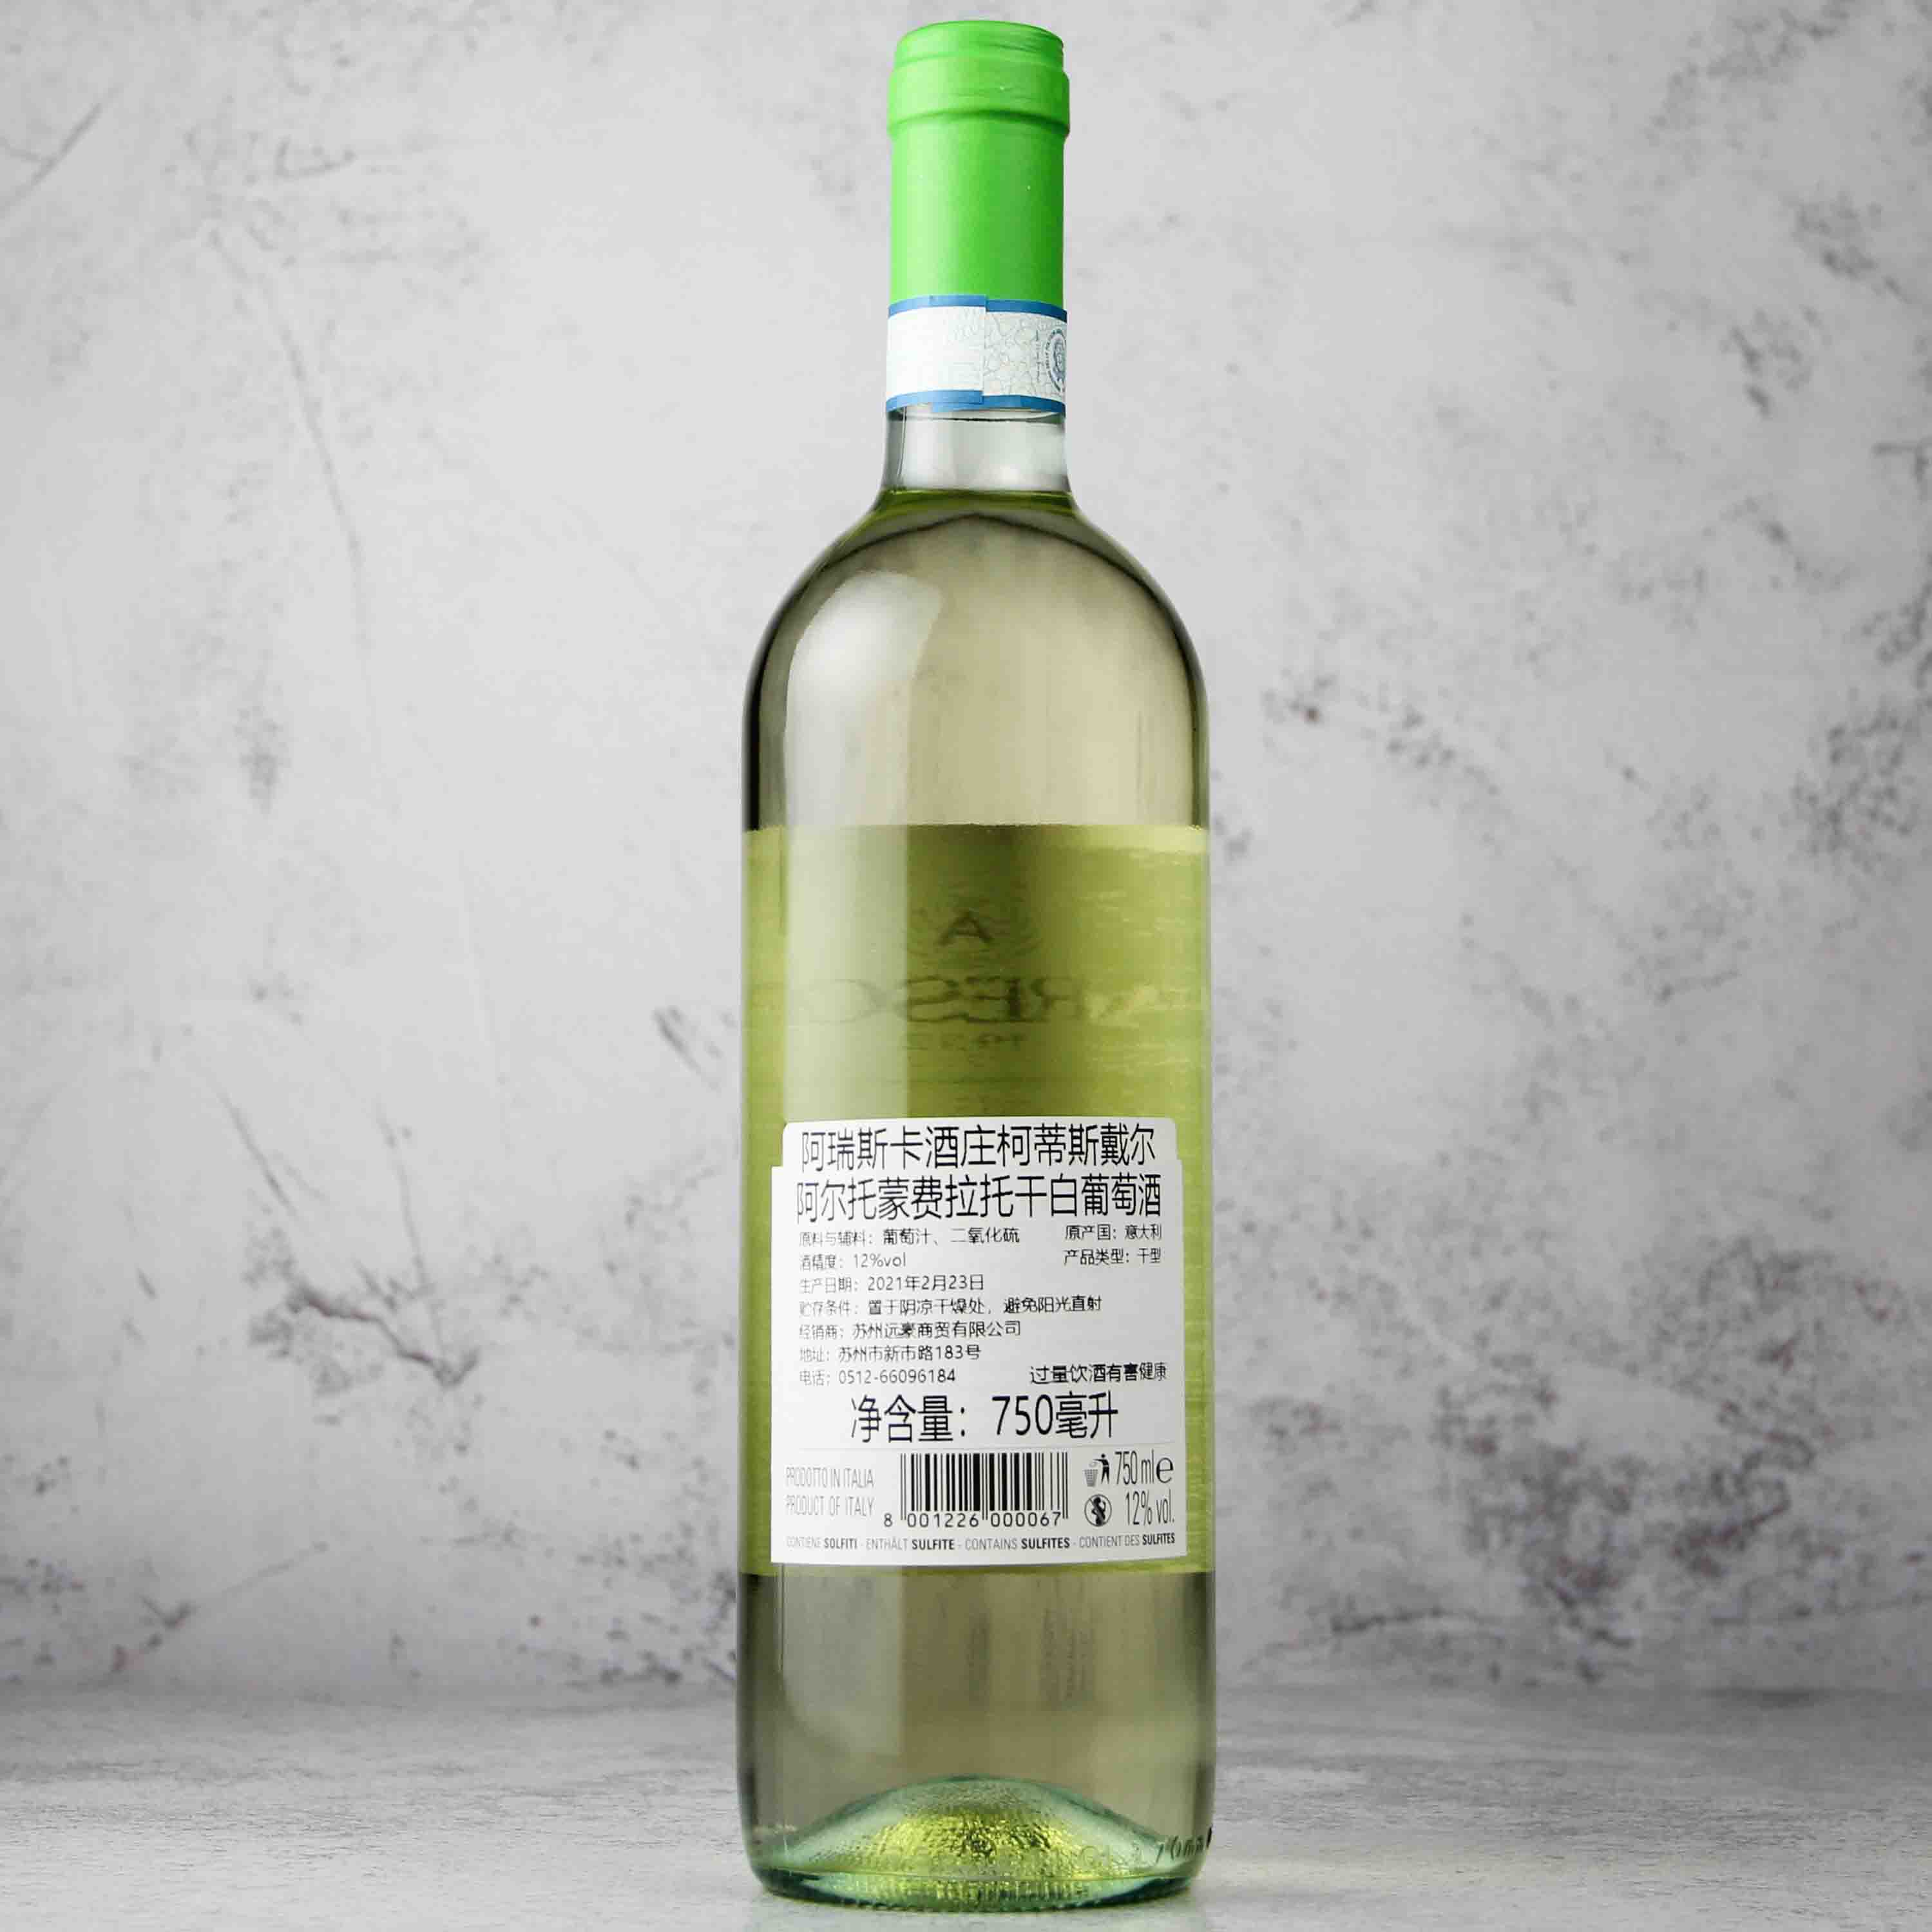 意大利皮埃蒙特ARESCA酒庄柯蒂斯戴尔阿尔托·蒙费拉托白葡萄酒